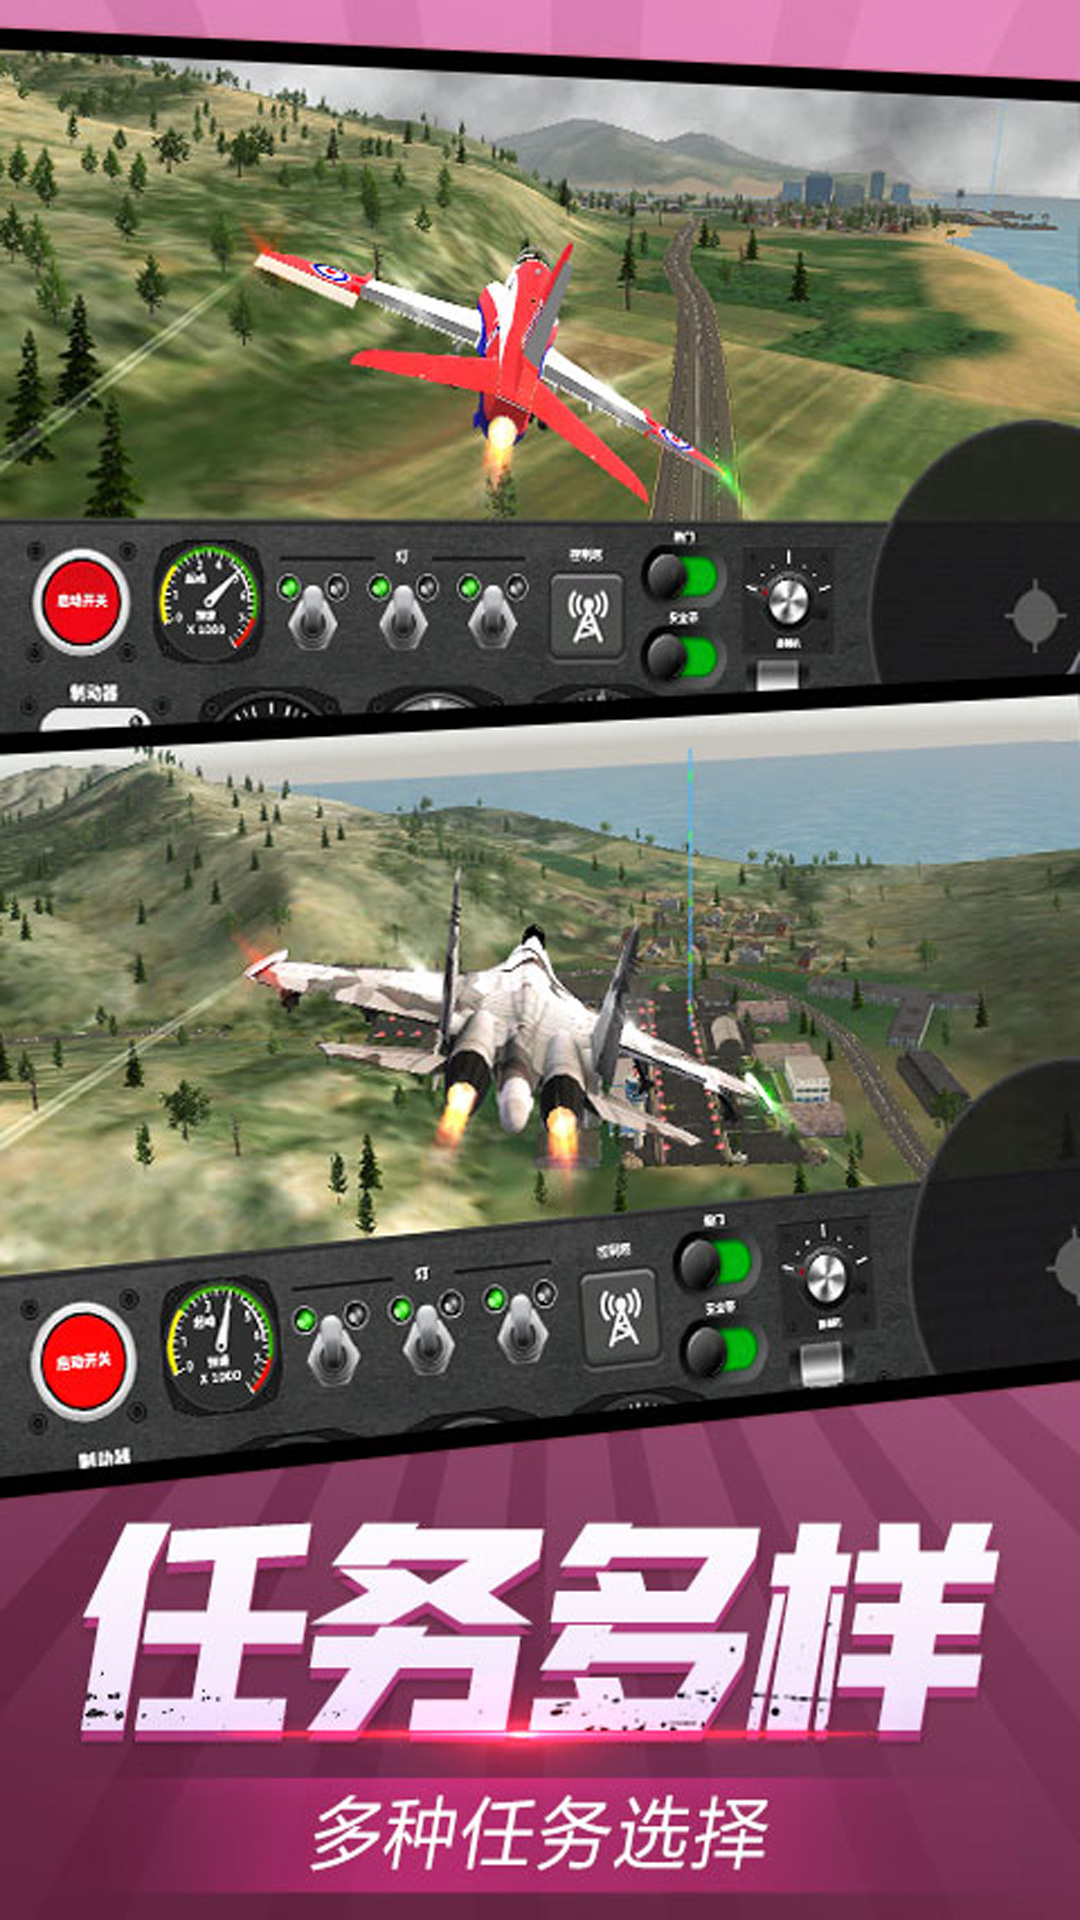 安全飞行模拟器游戏官方手机版截图4: